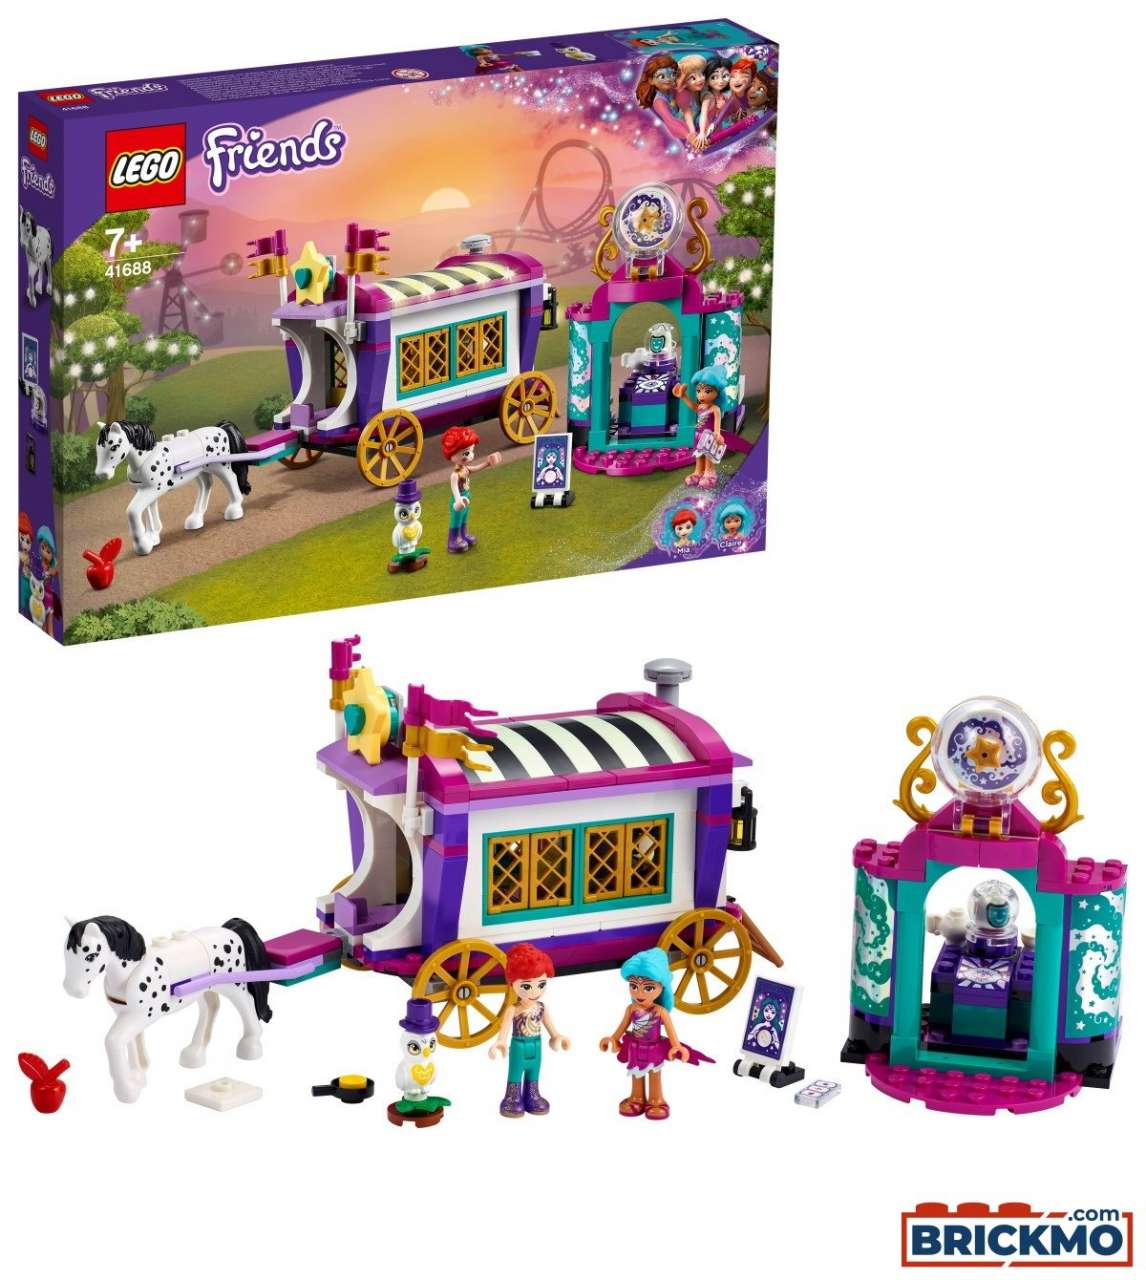 LEGO Friends 41688 Magischer Wohnwagen 41688